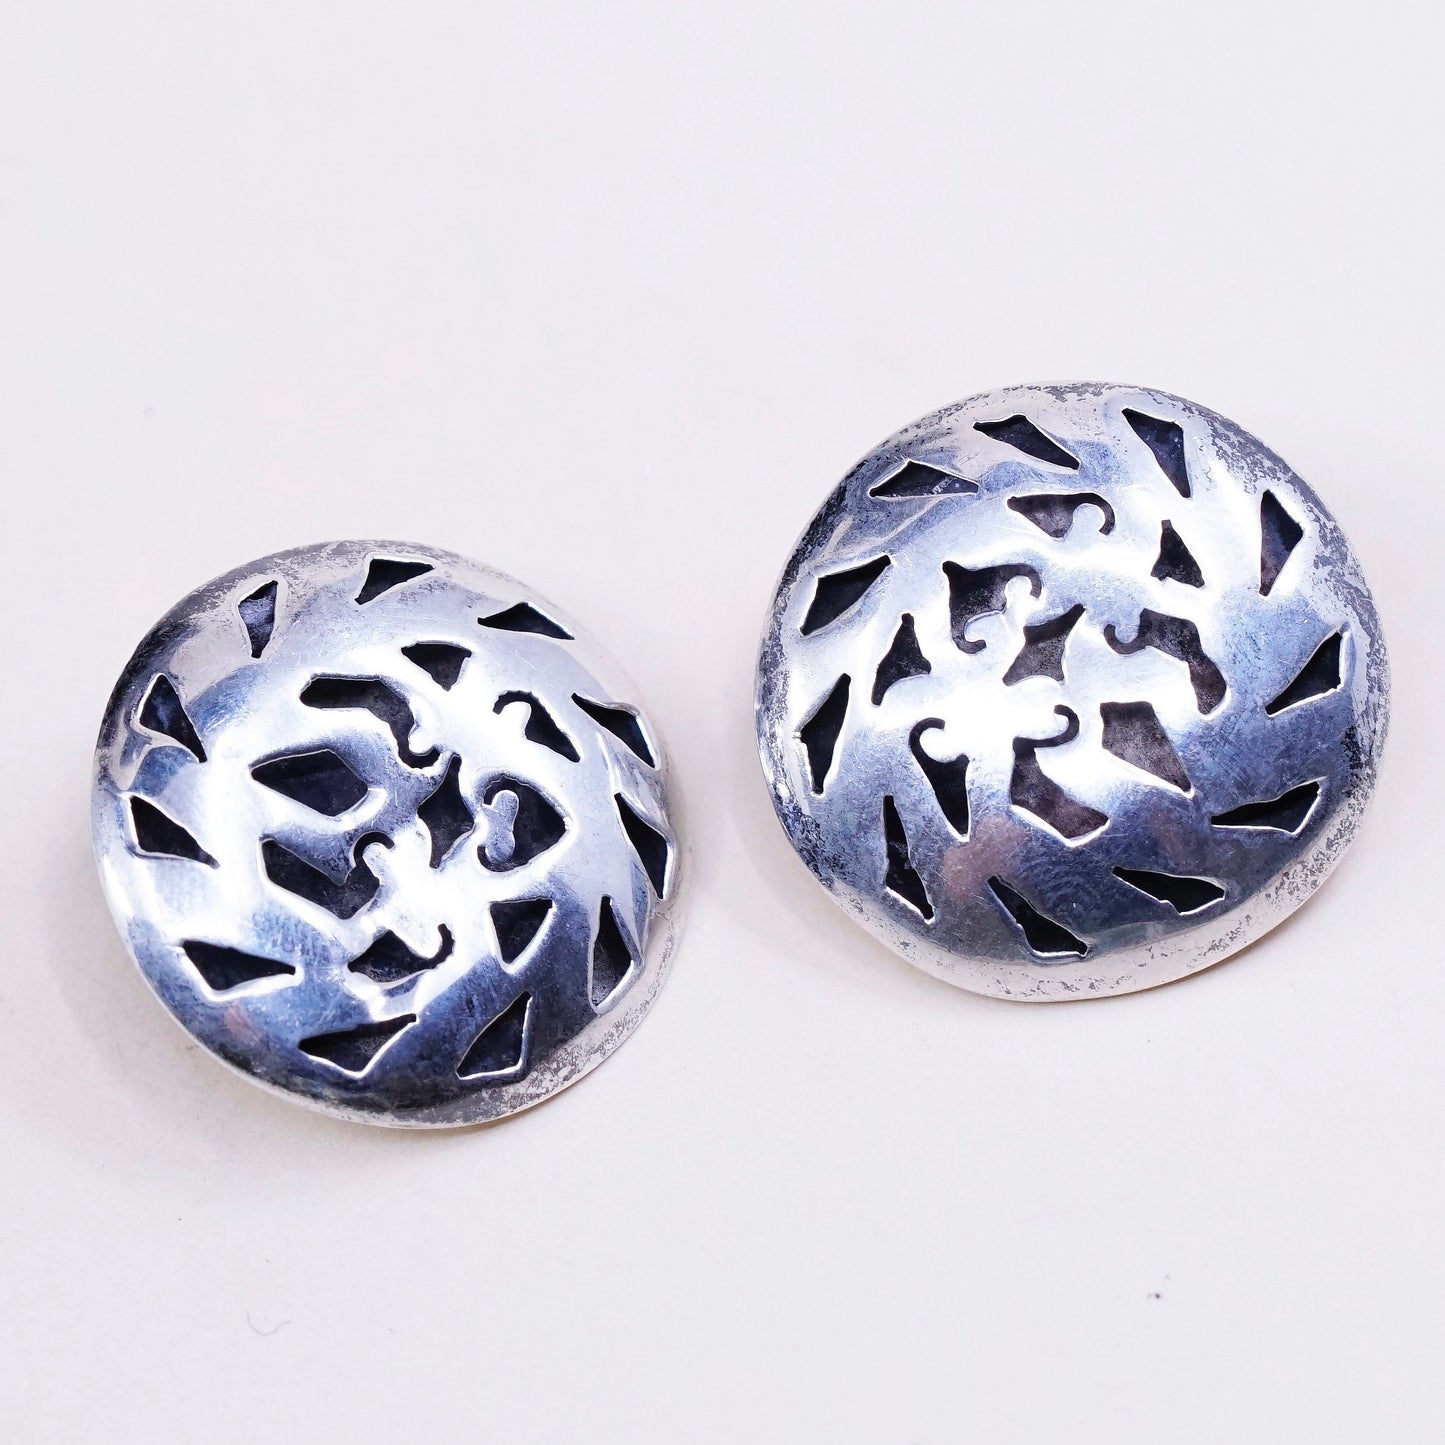 vtg sterling silver handmade earrings, 925 clip on earrings w/ pattern cut out